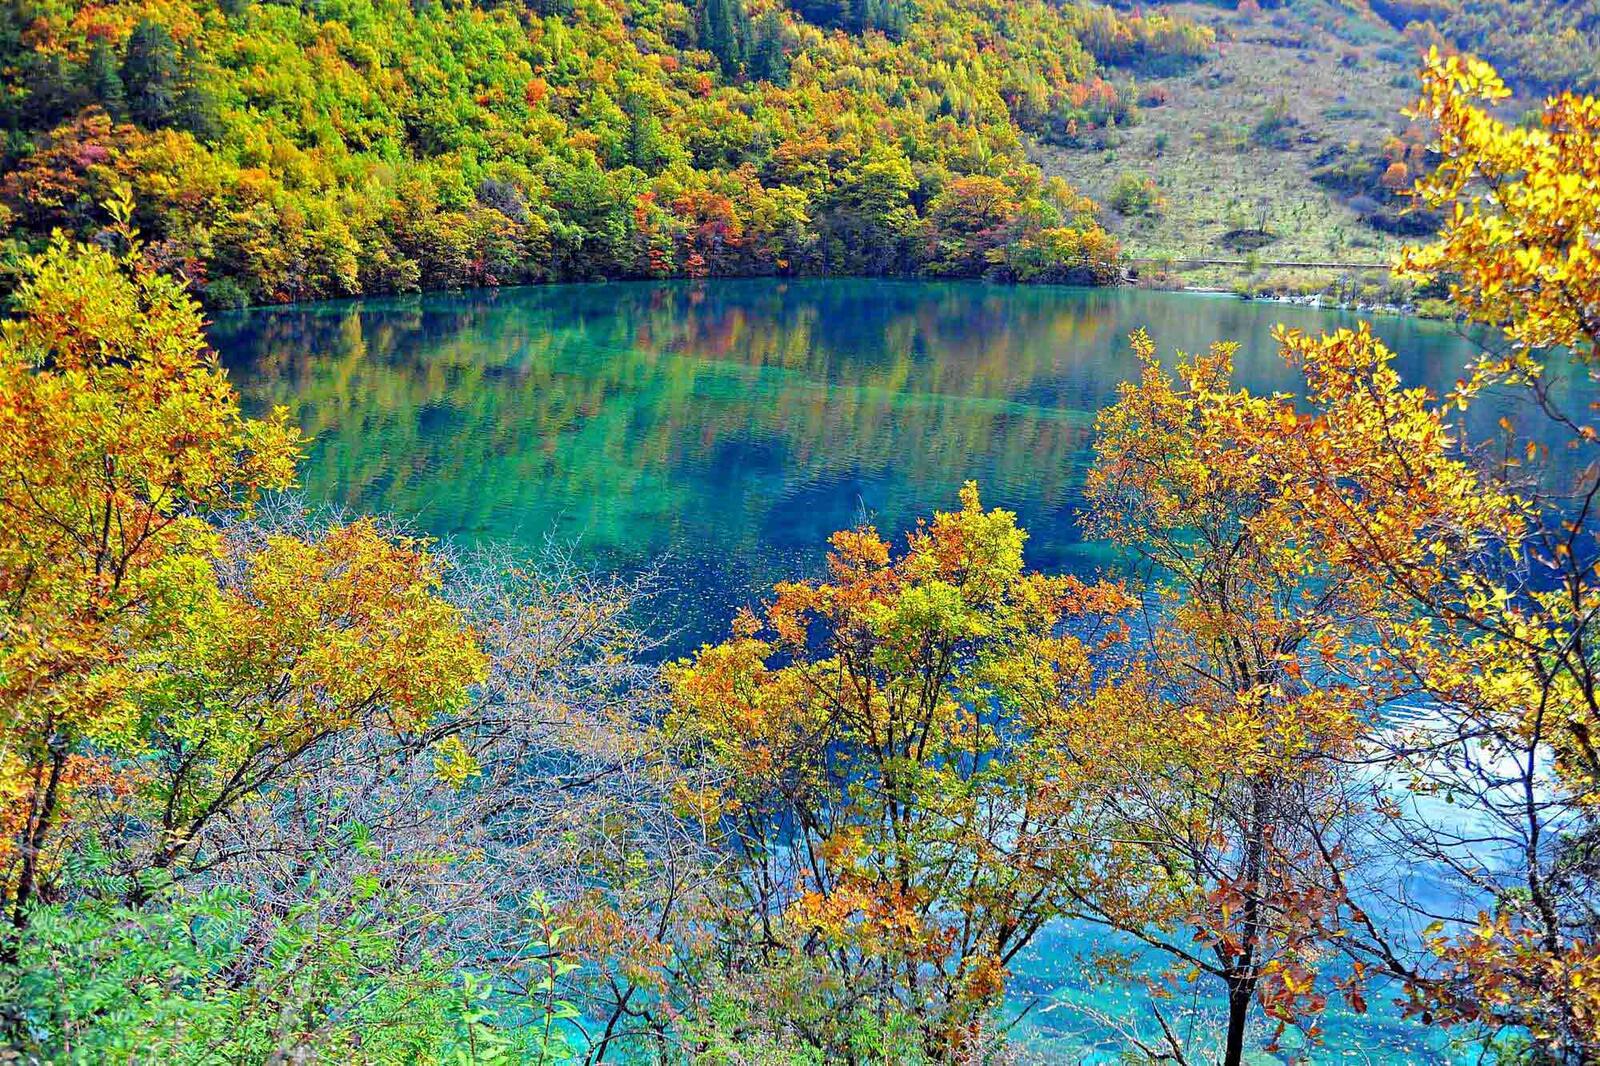 免费照片中国中部四川省一个自然保护区内的湖泊